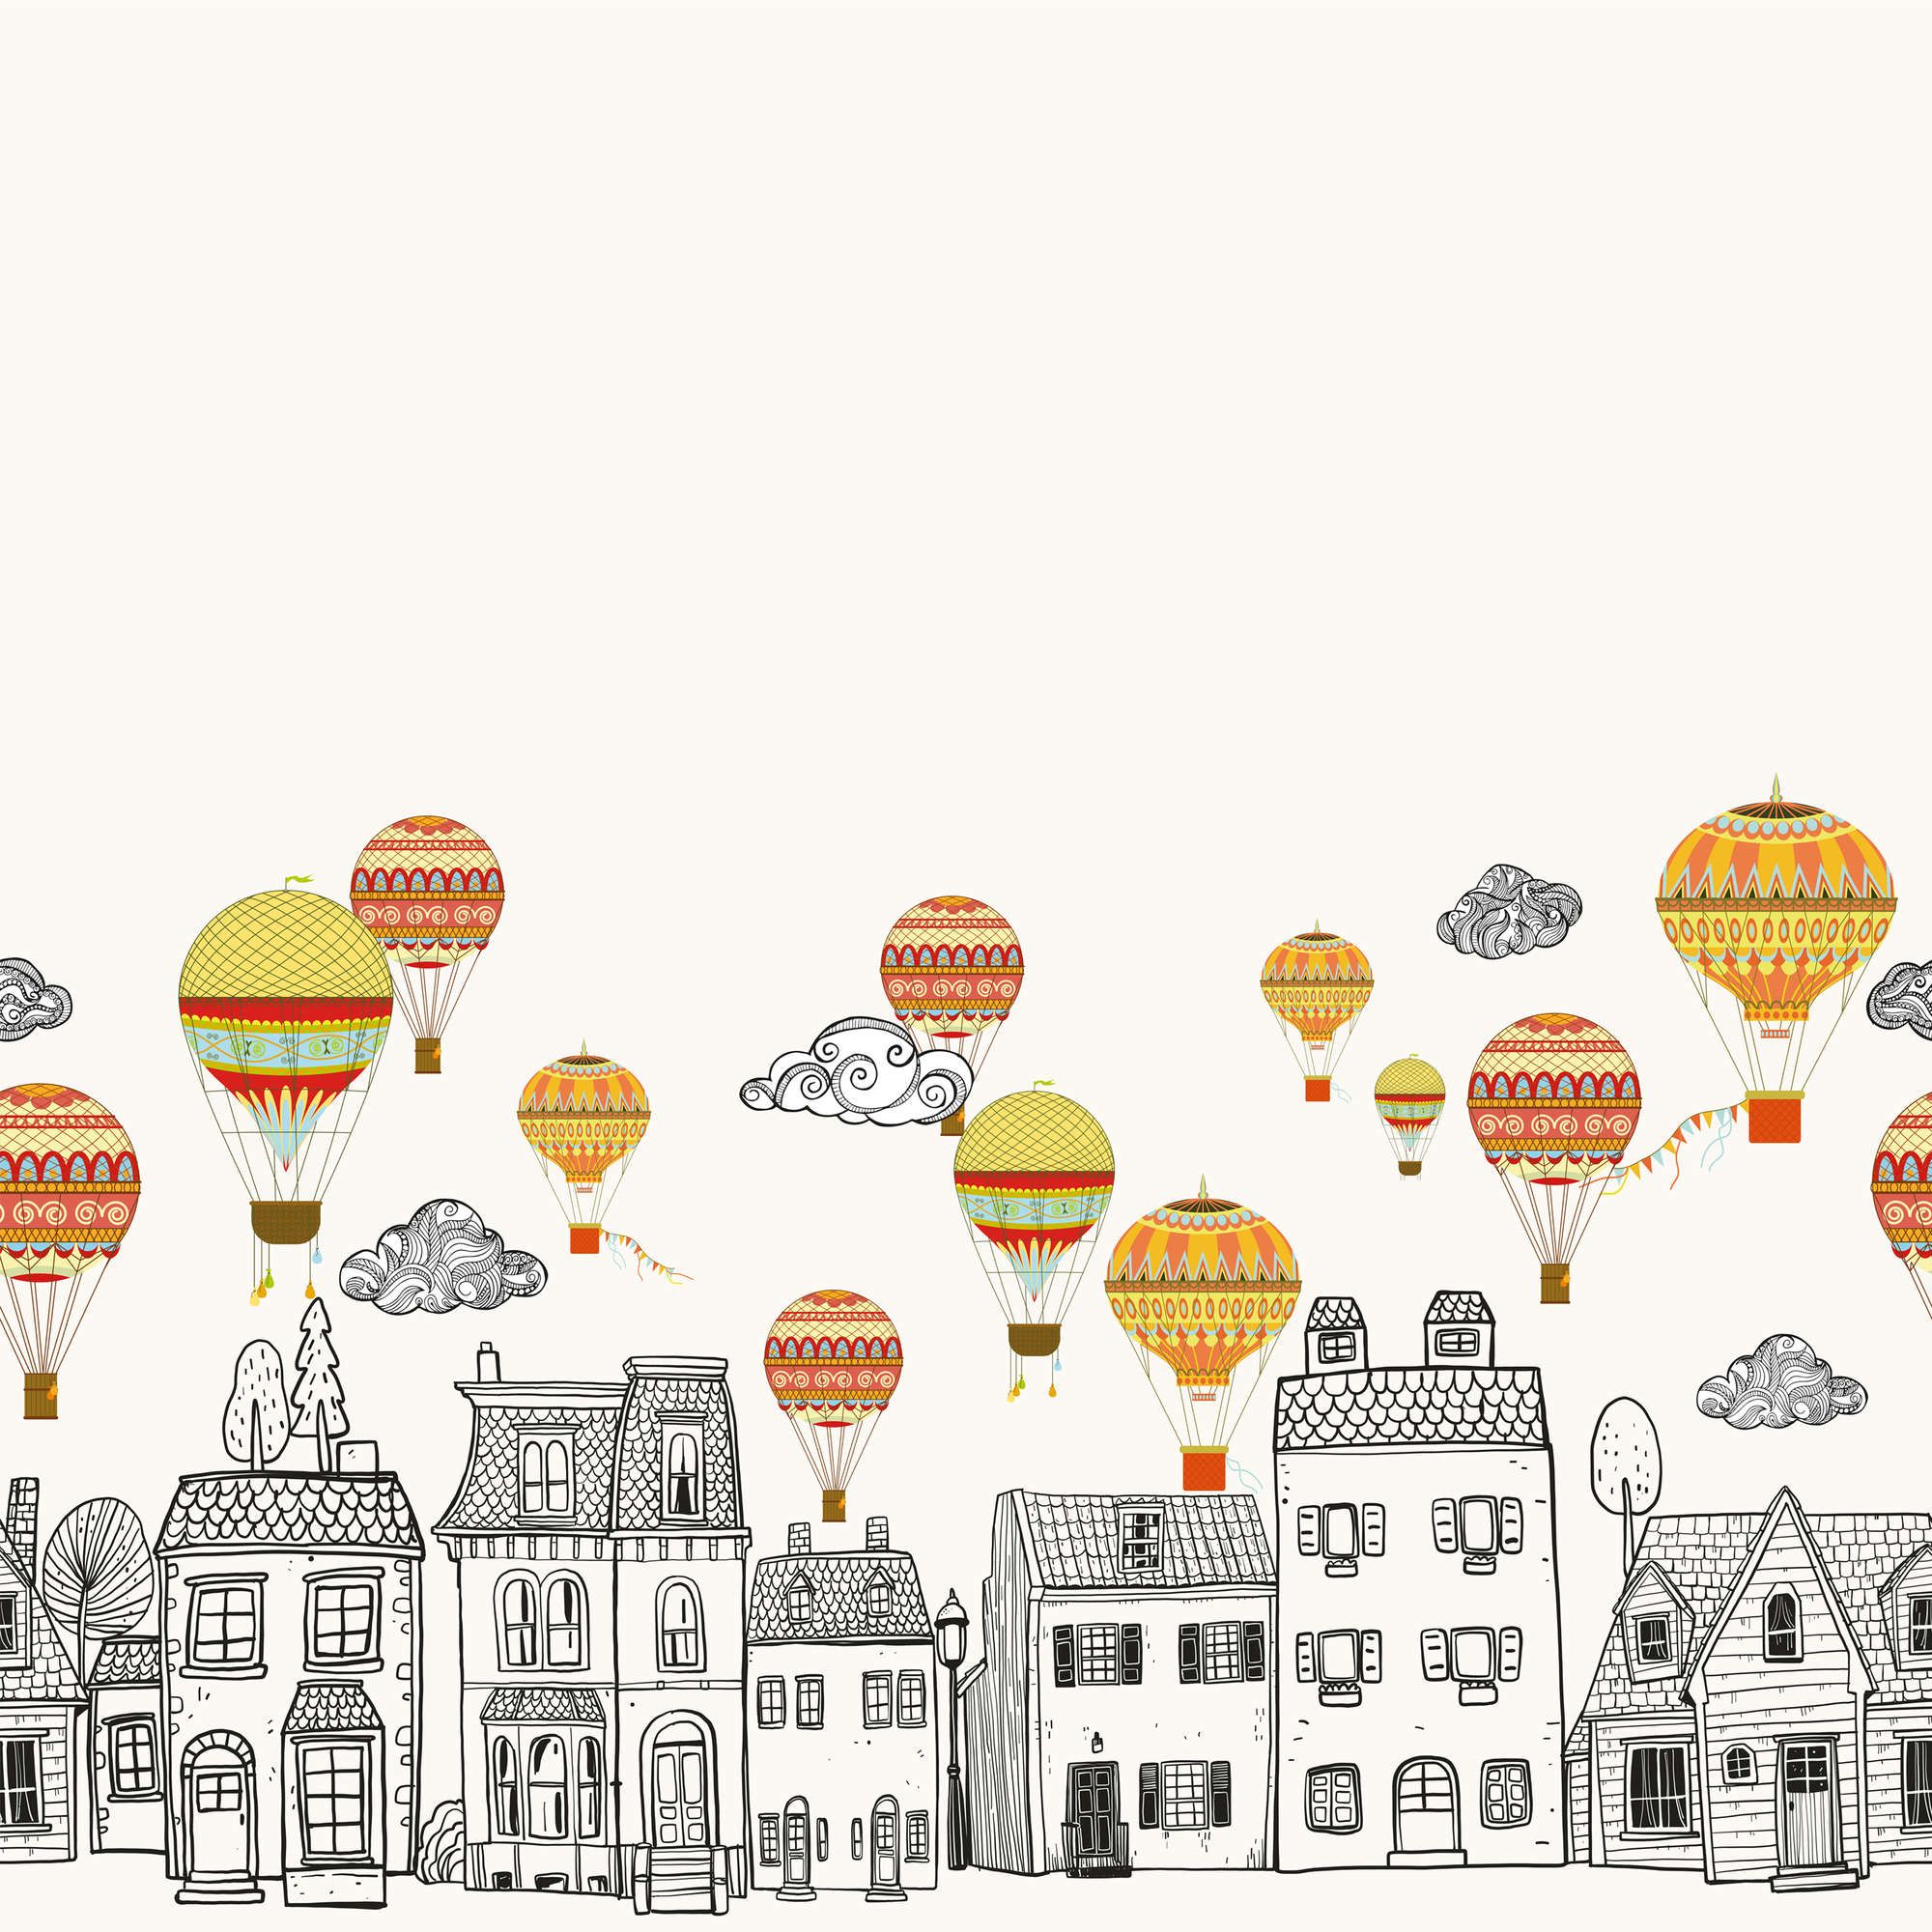             Kleine stad met heteluchtballonnen behang - glad & parelmoervlies
        